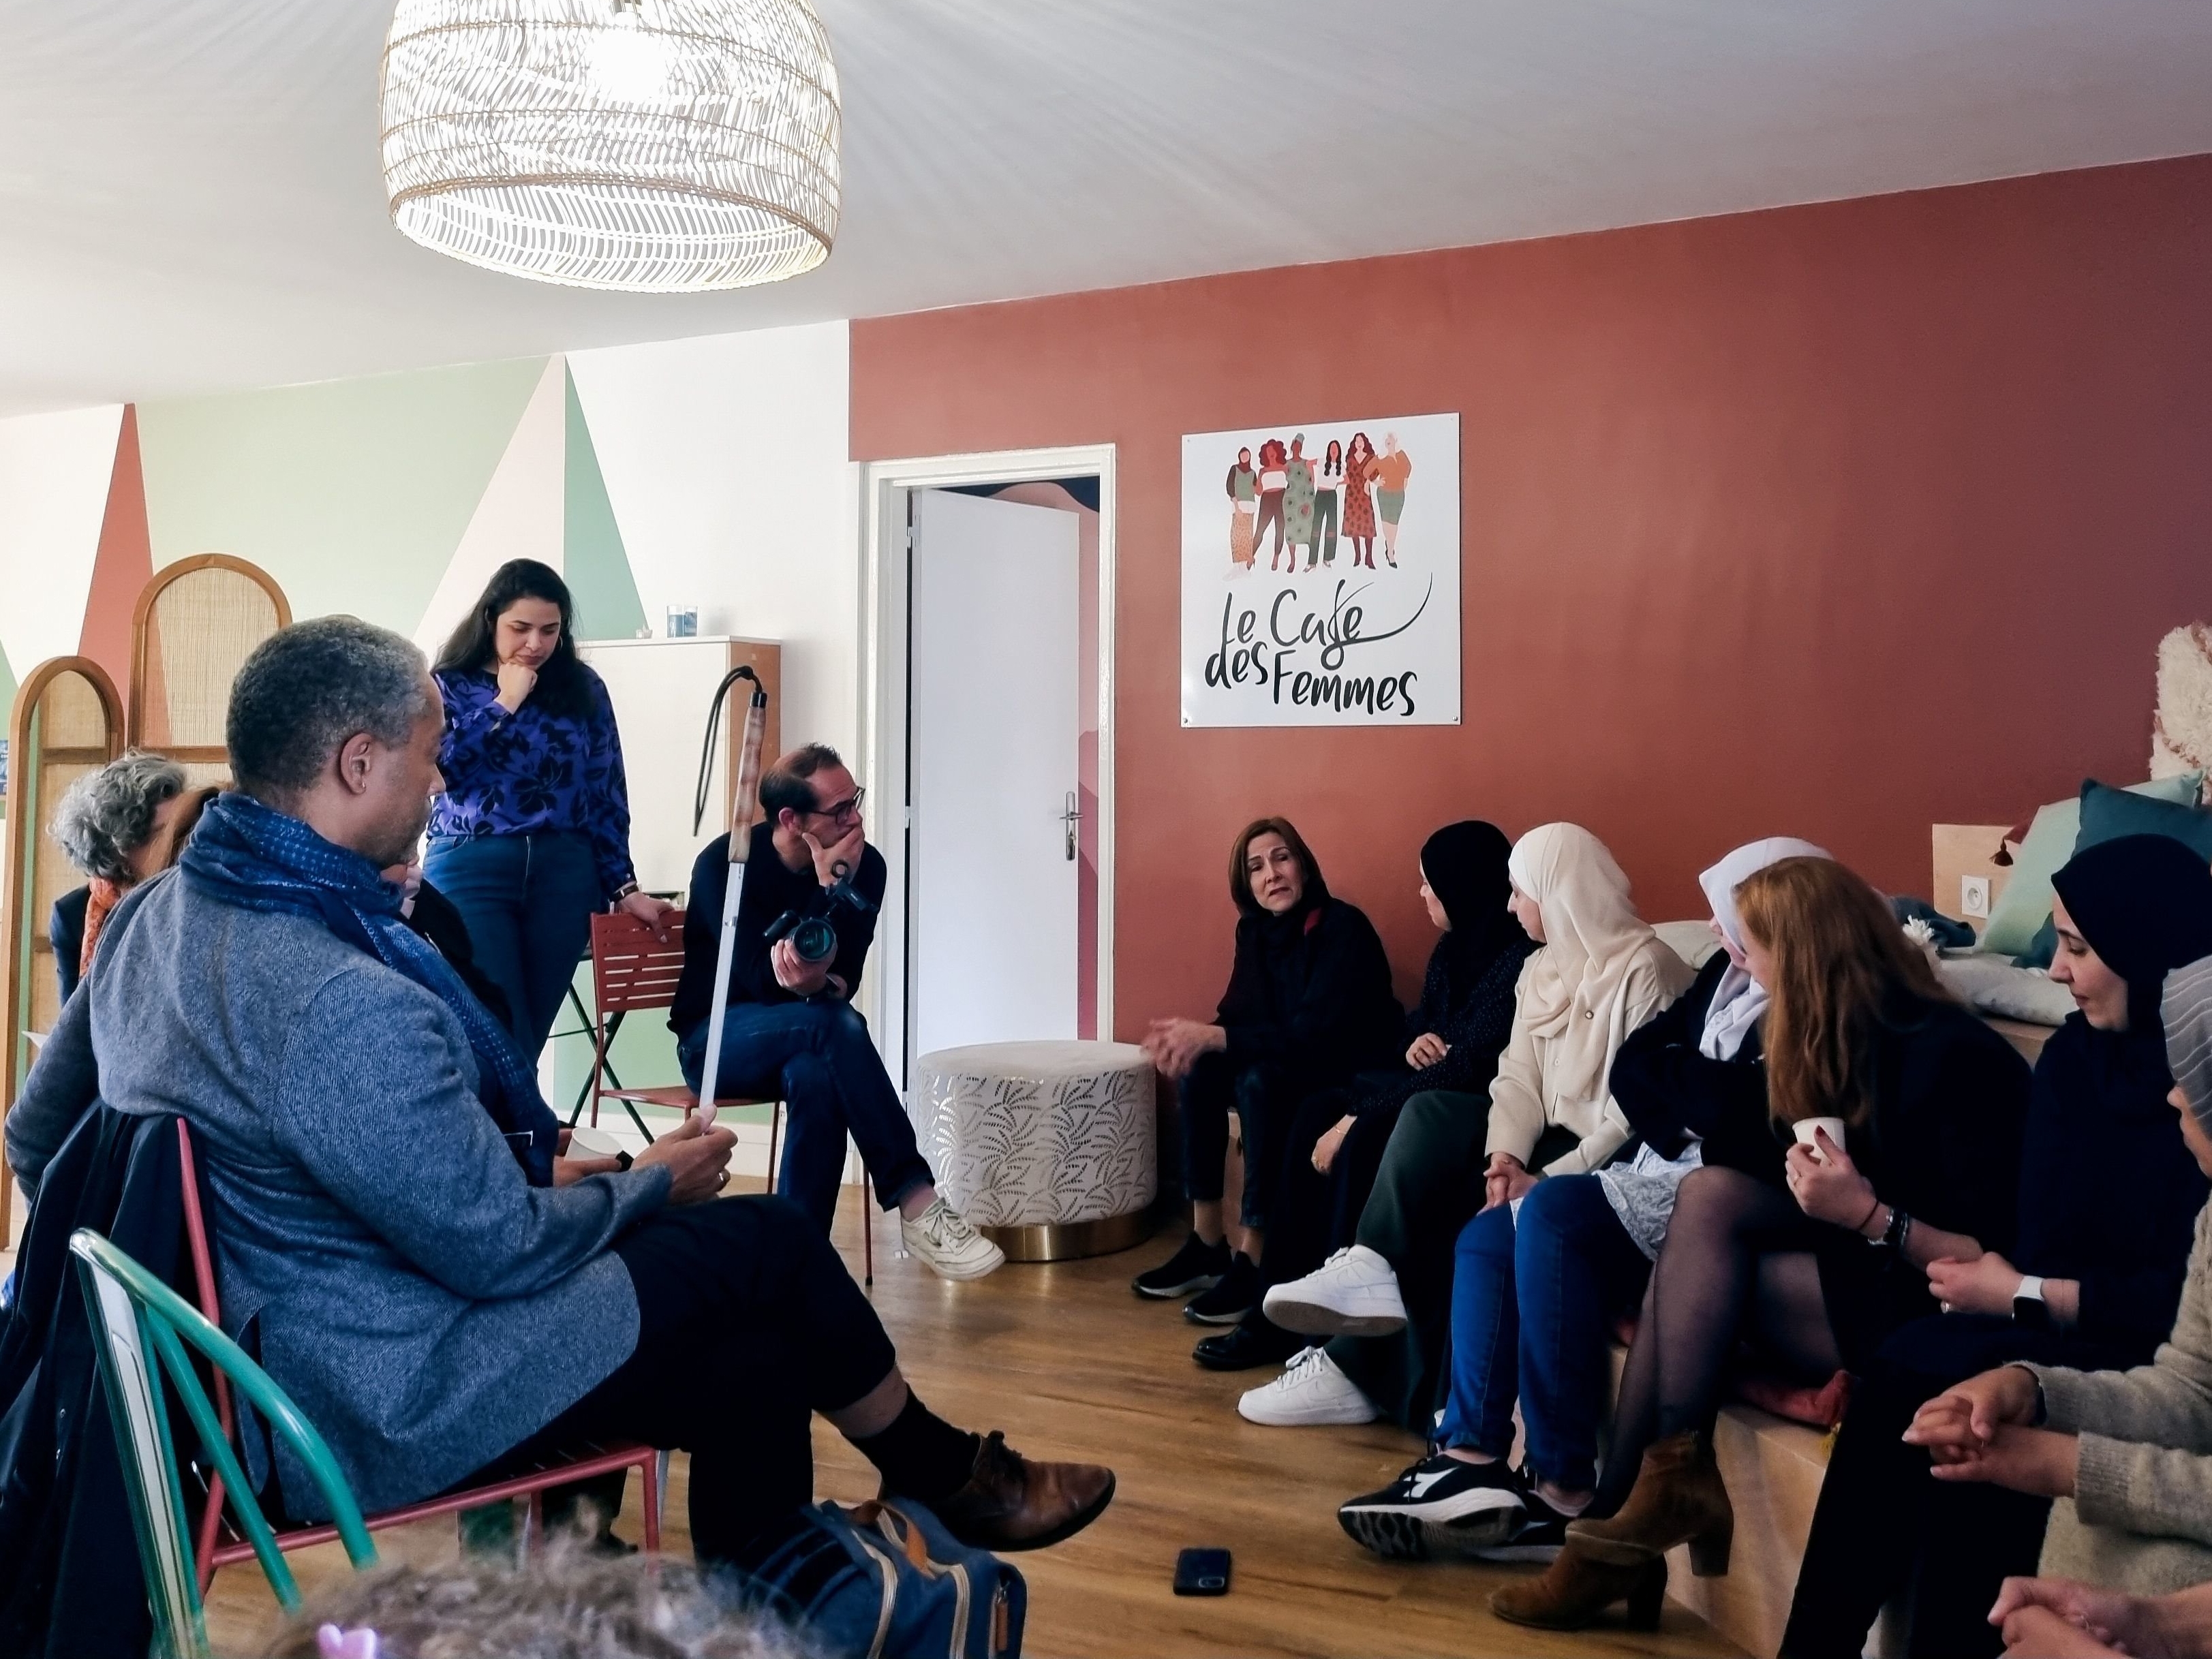 Le « Café des femmes » se veut comme un lieu de formation autour de la santé destiné aux femmes vulnérables. LP/Elsa Fournier